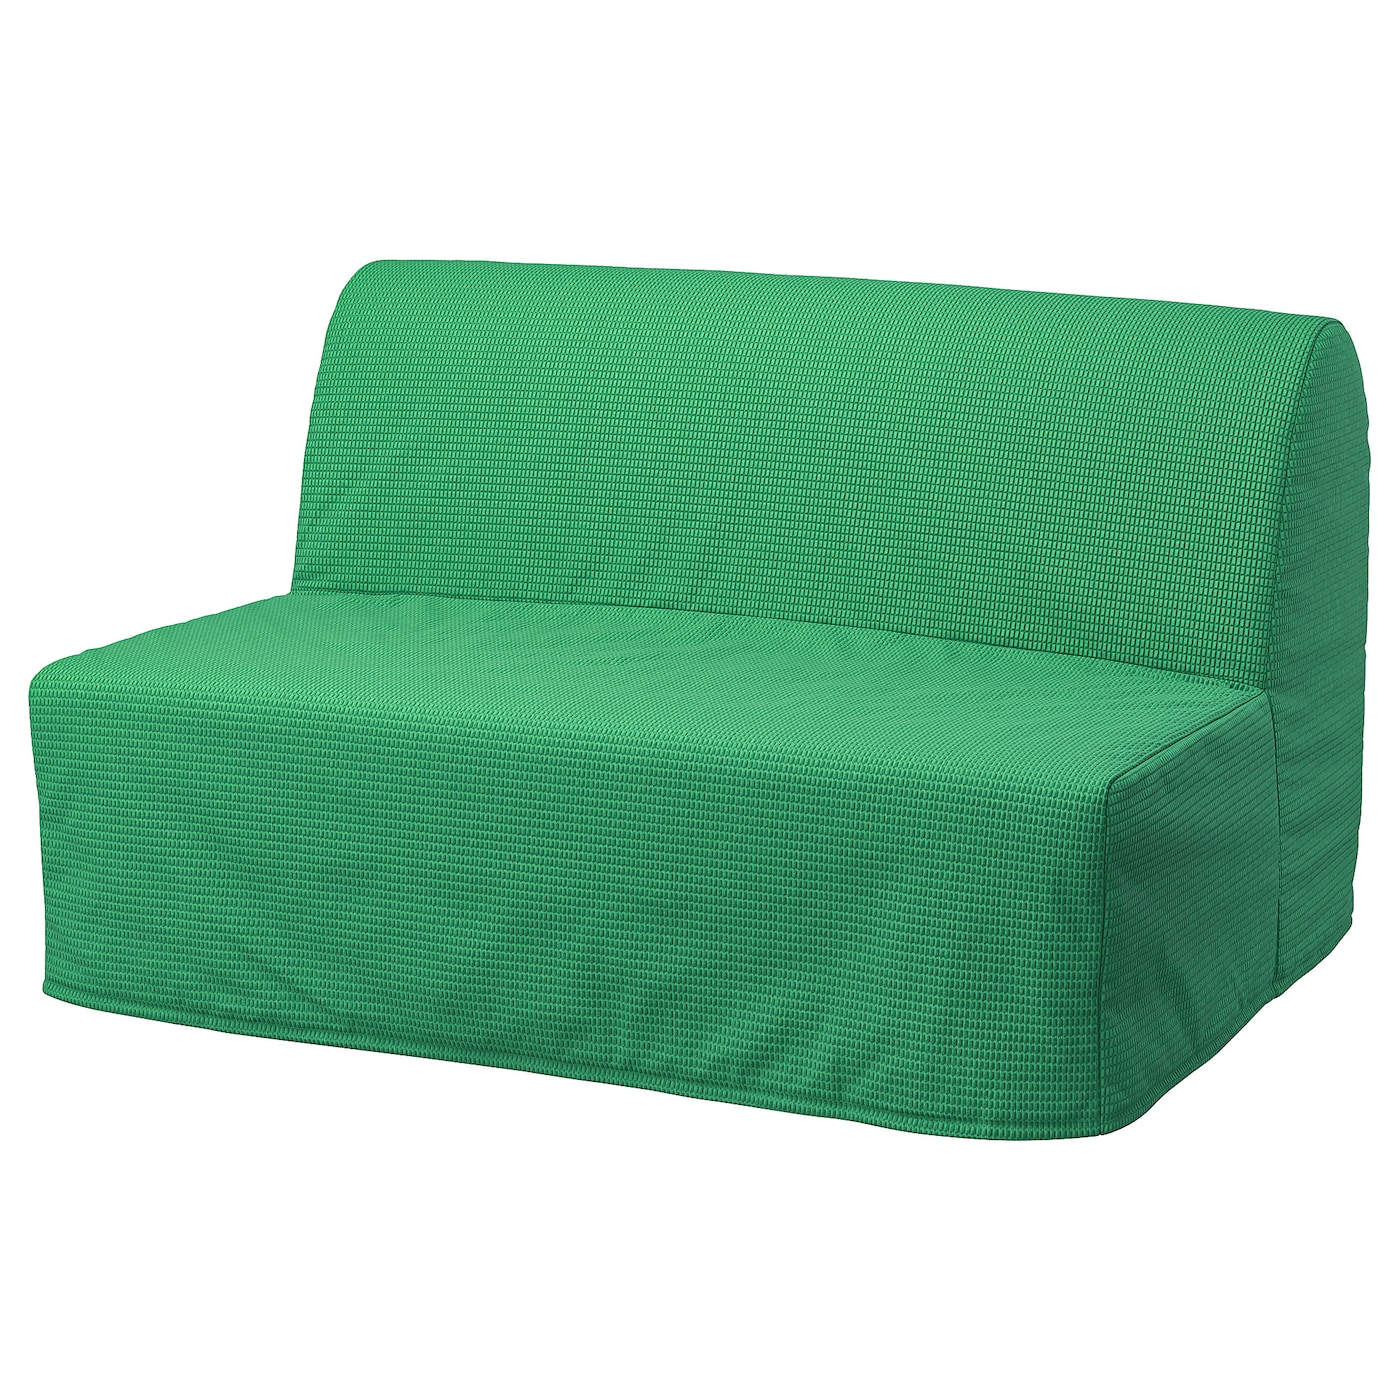 ЛИКСЕЛЕ МУРБО 2 раскладных дивана-кровати, Вансбро ярко-зеленый LYCKSELE MURBO IKEA